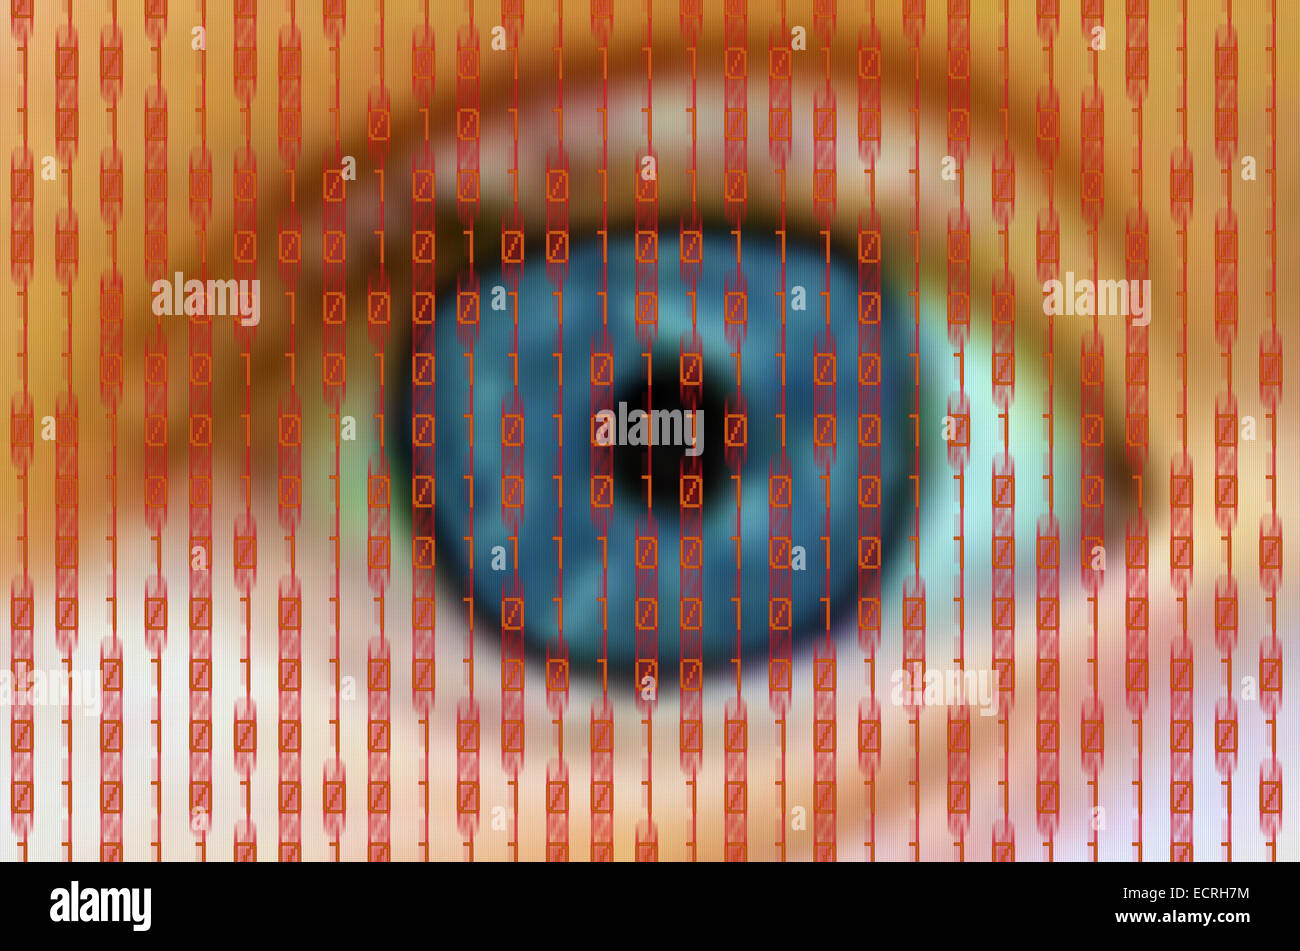 menschliche Auge hinter einem digitalen Bildschirm mit roten Binärzahlen Stockfoto